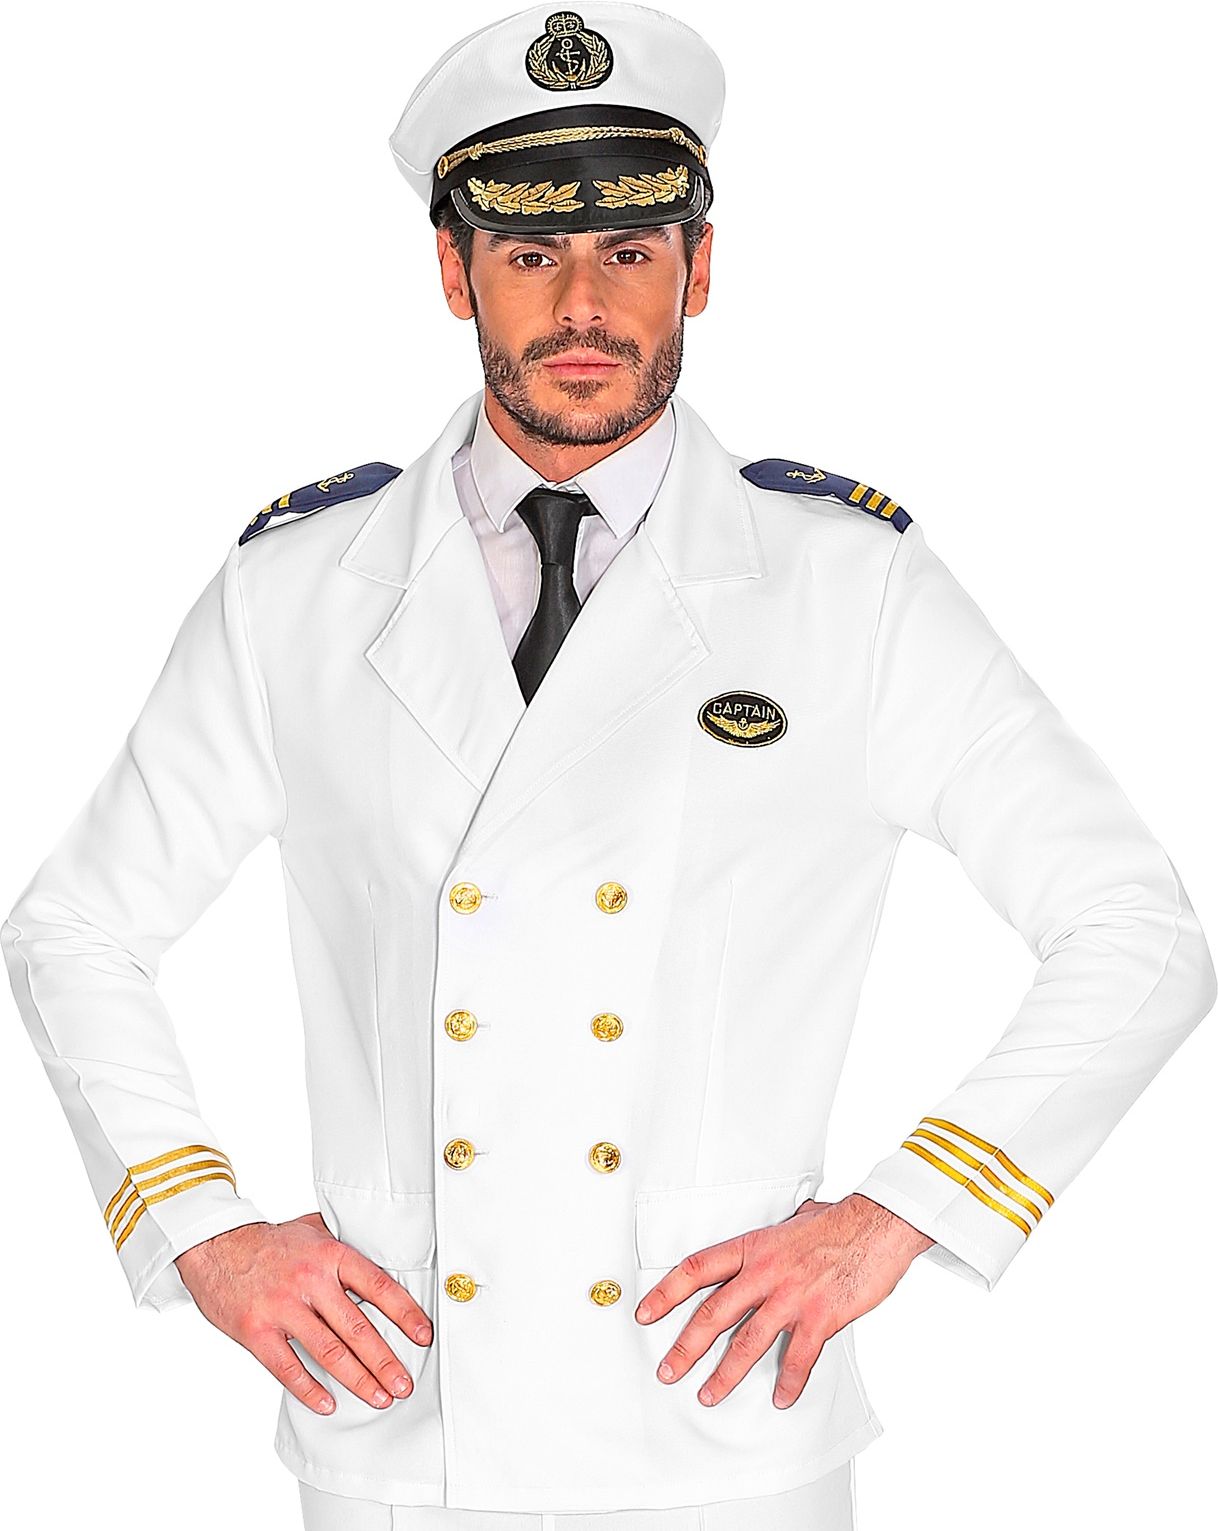 Witte kapiteins jas